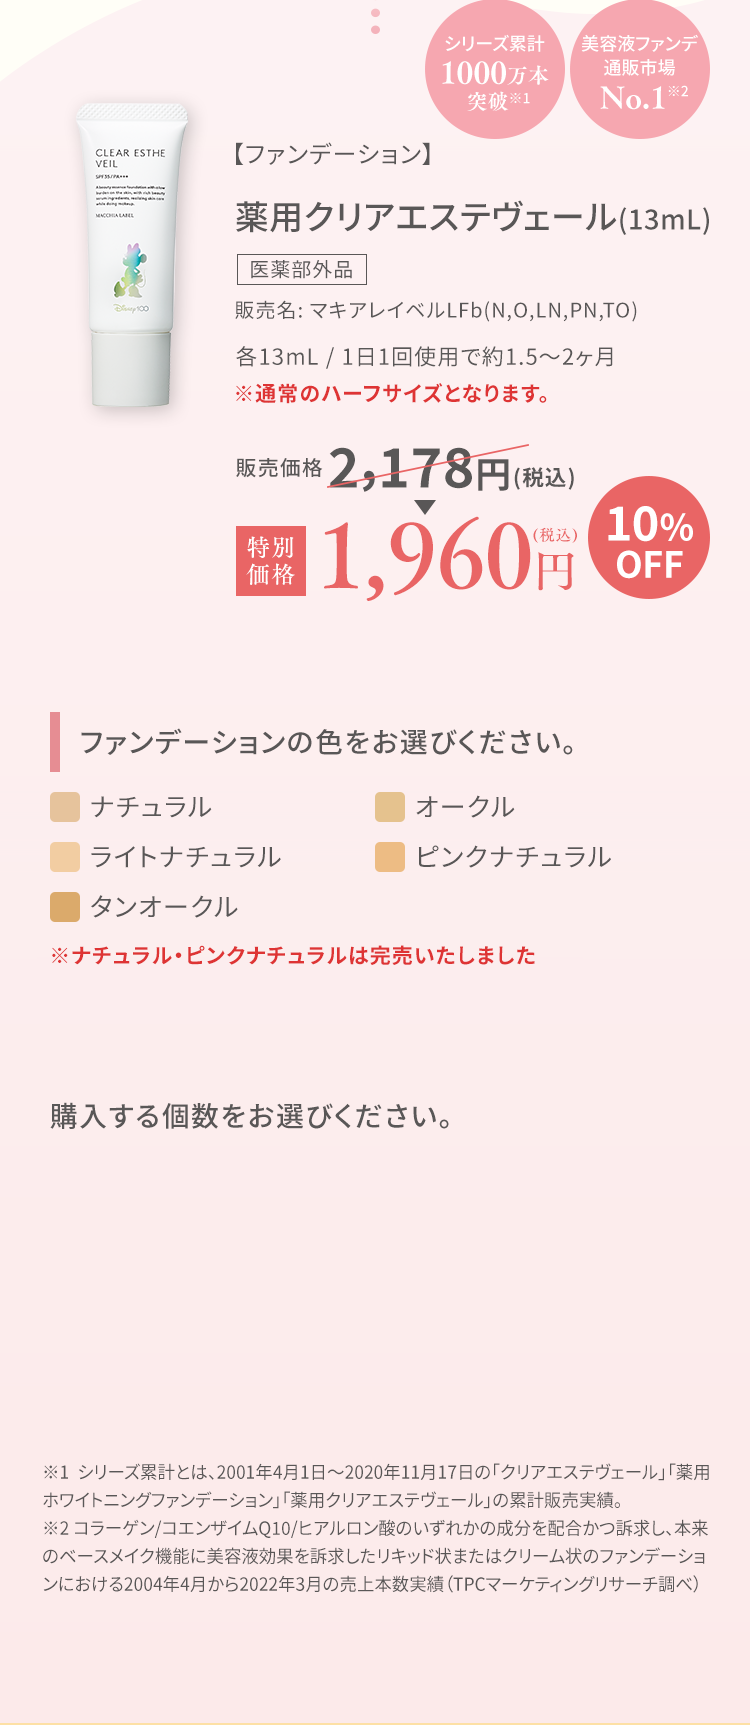 【ファンデーション】薬用クリアエステヴェール(13mL) 1,960円(税込)